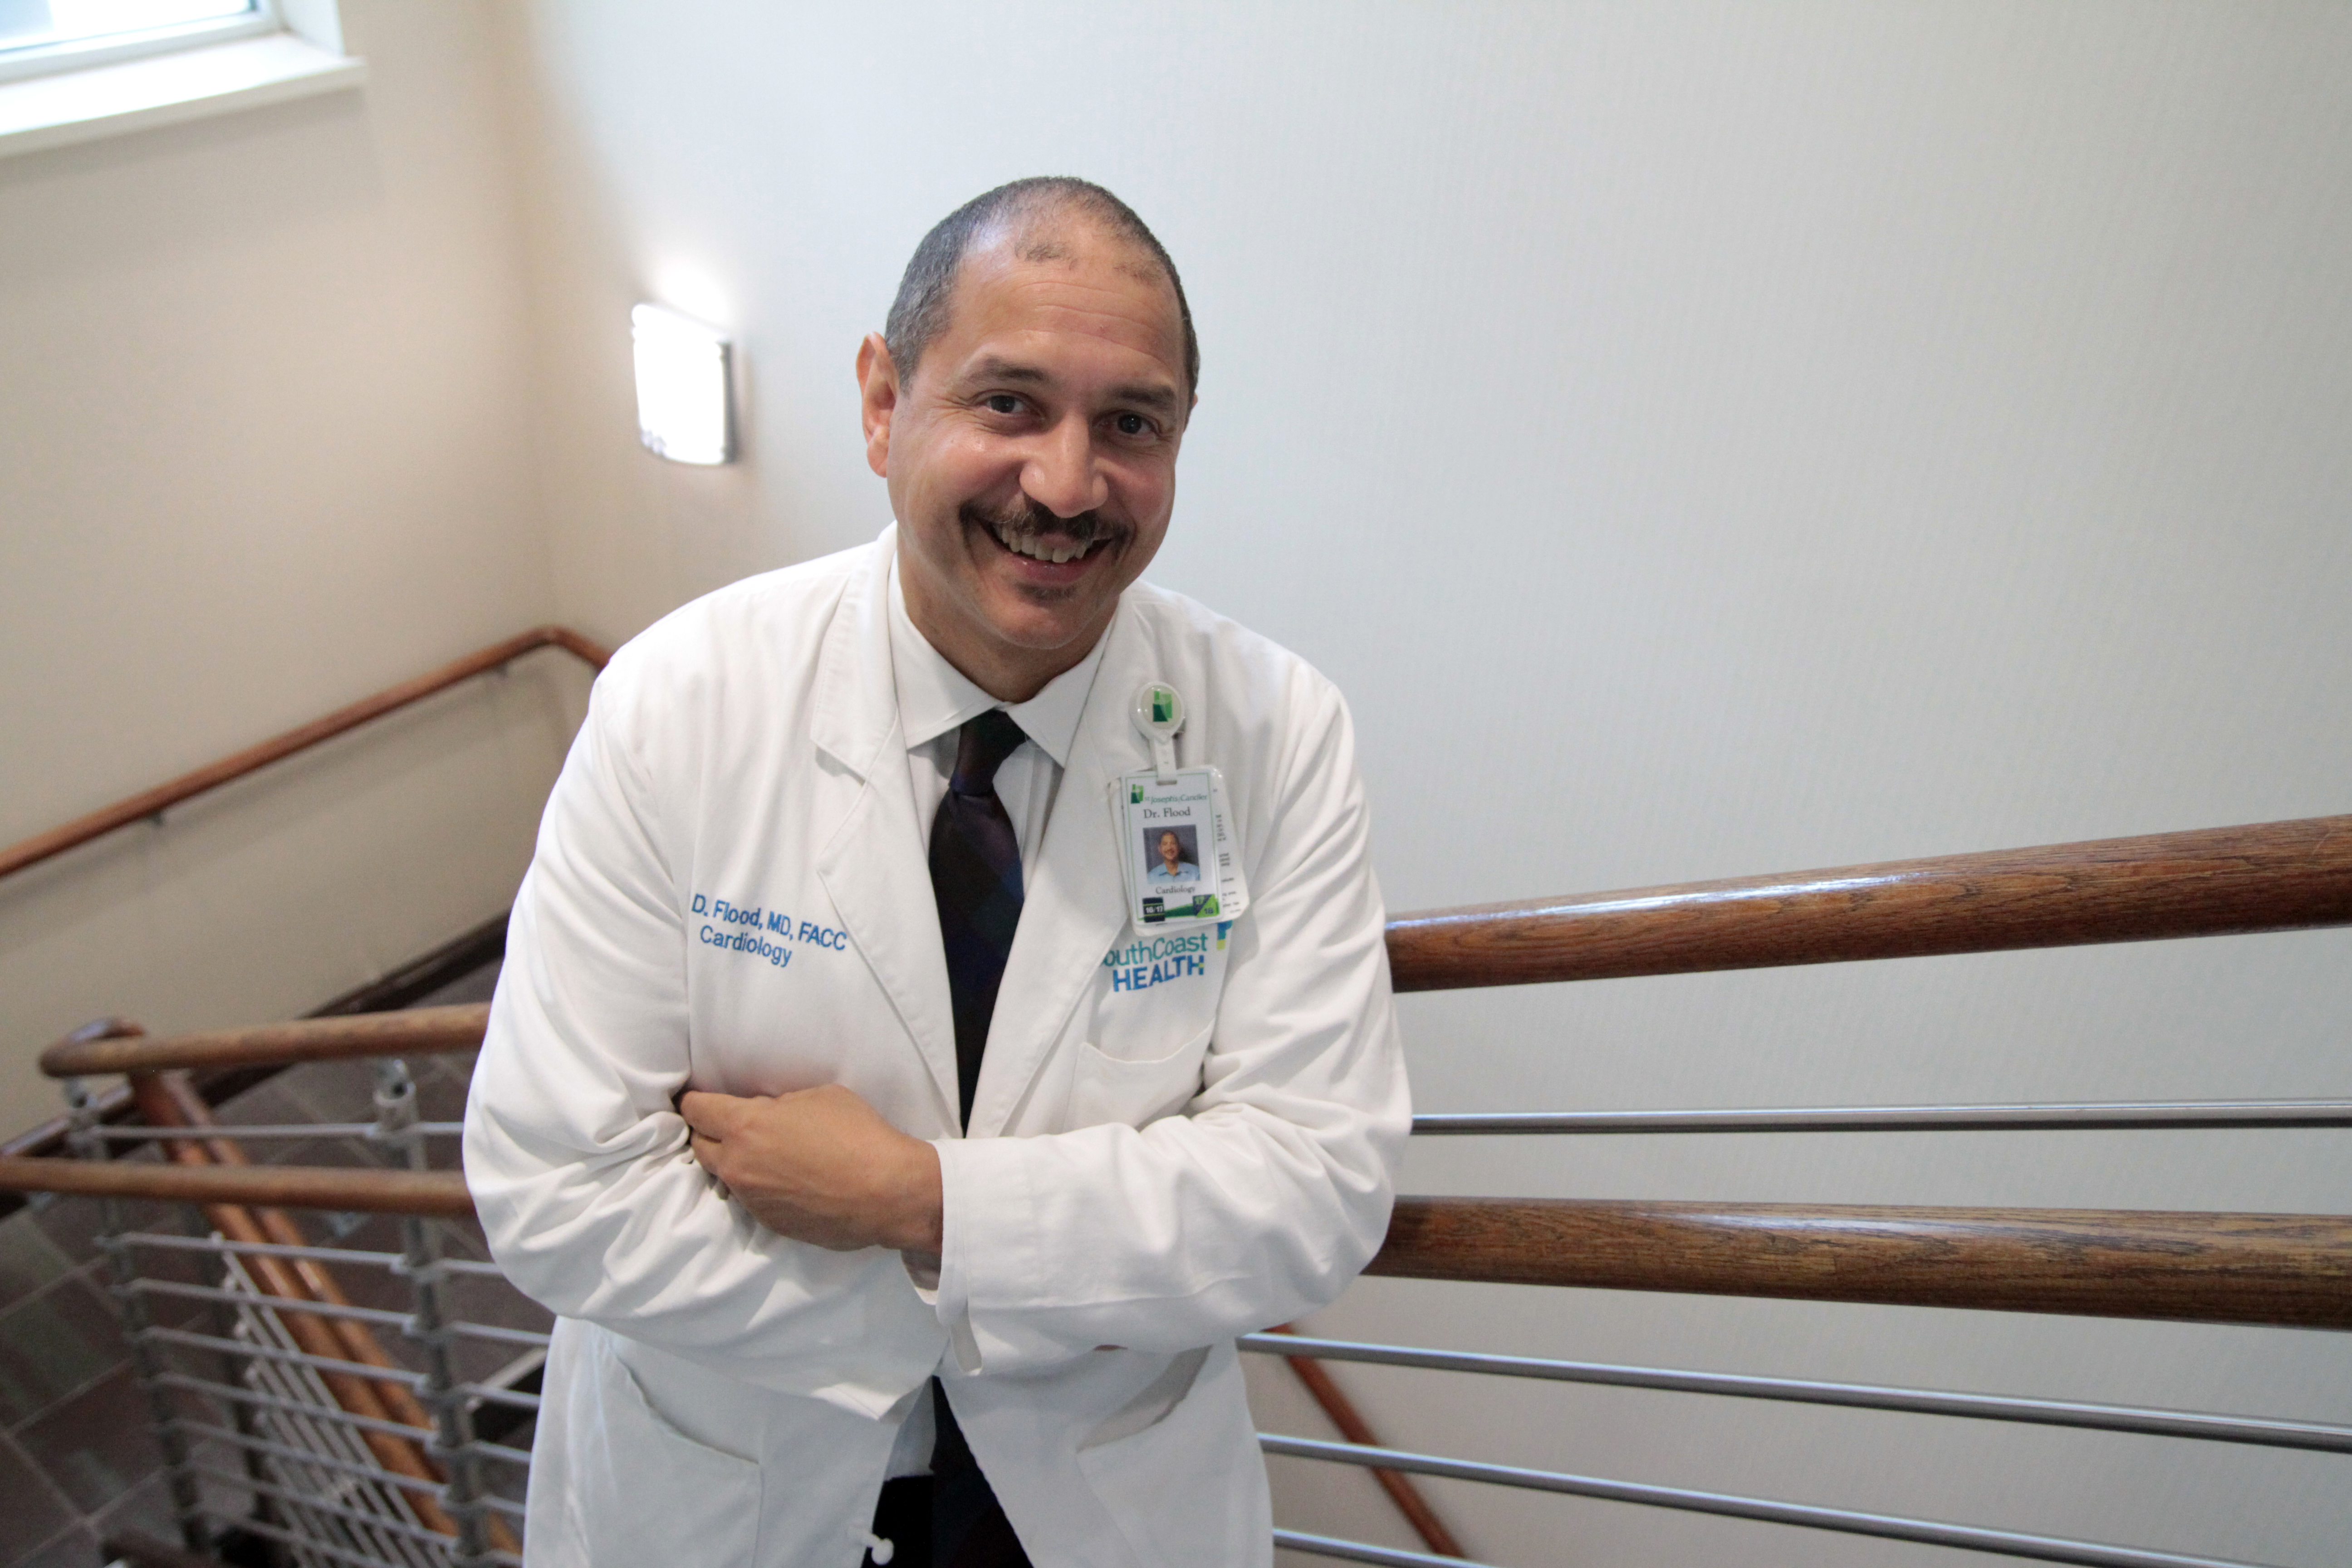 Dr. Roy Flood of SouthCoast Health Cardiology